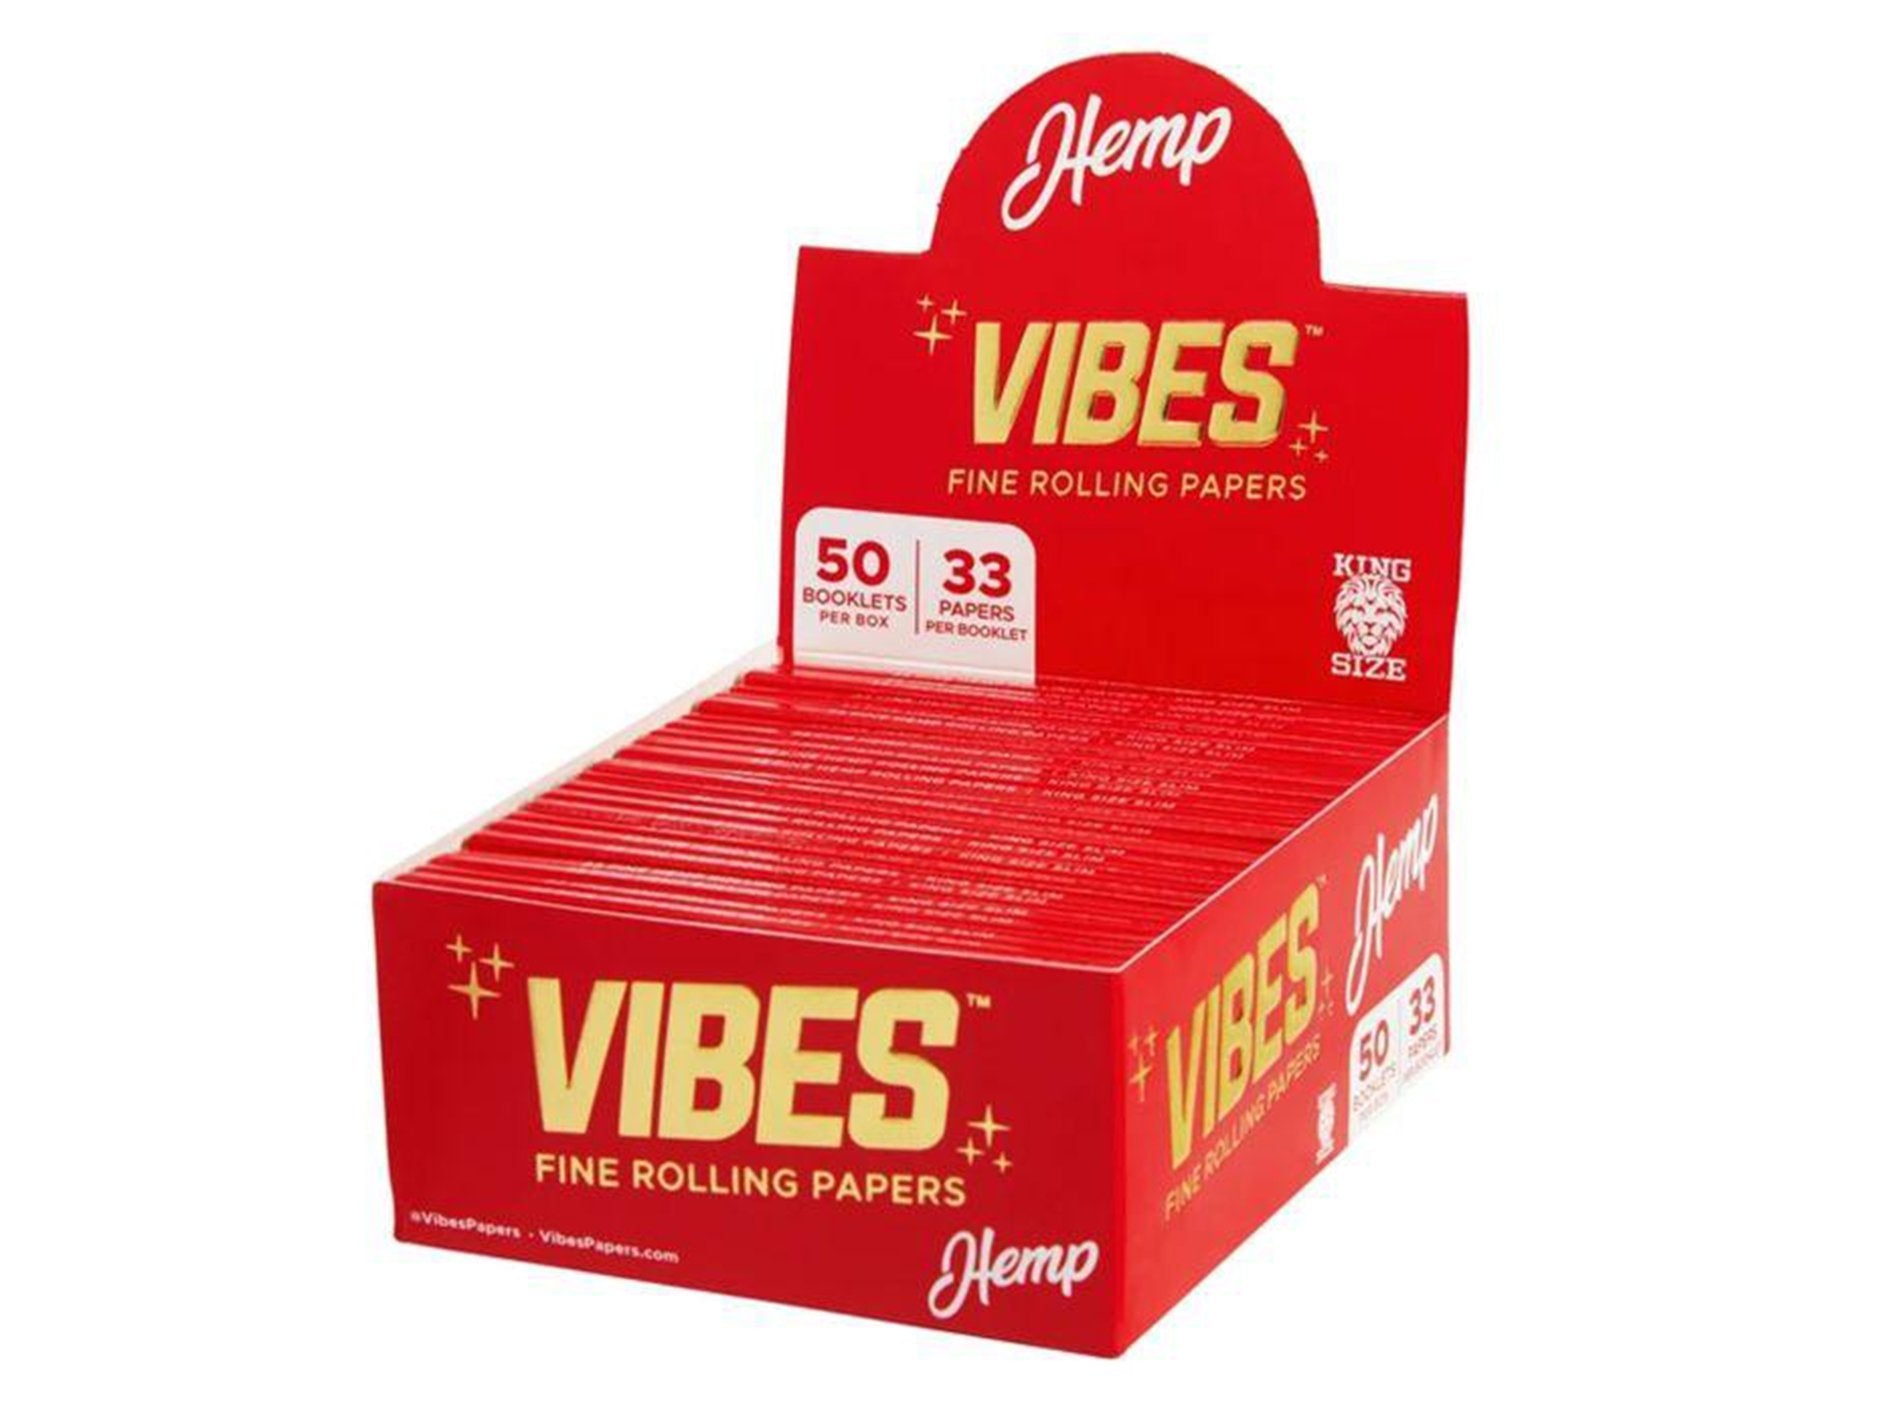 VIBES King Size Slim Rolling Papers - Hemp (Red) - VIR Wholesale